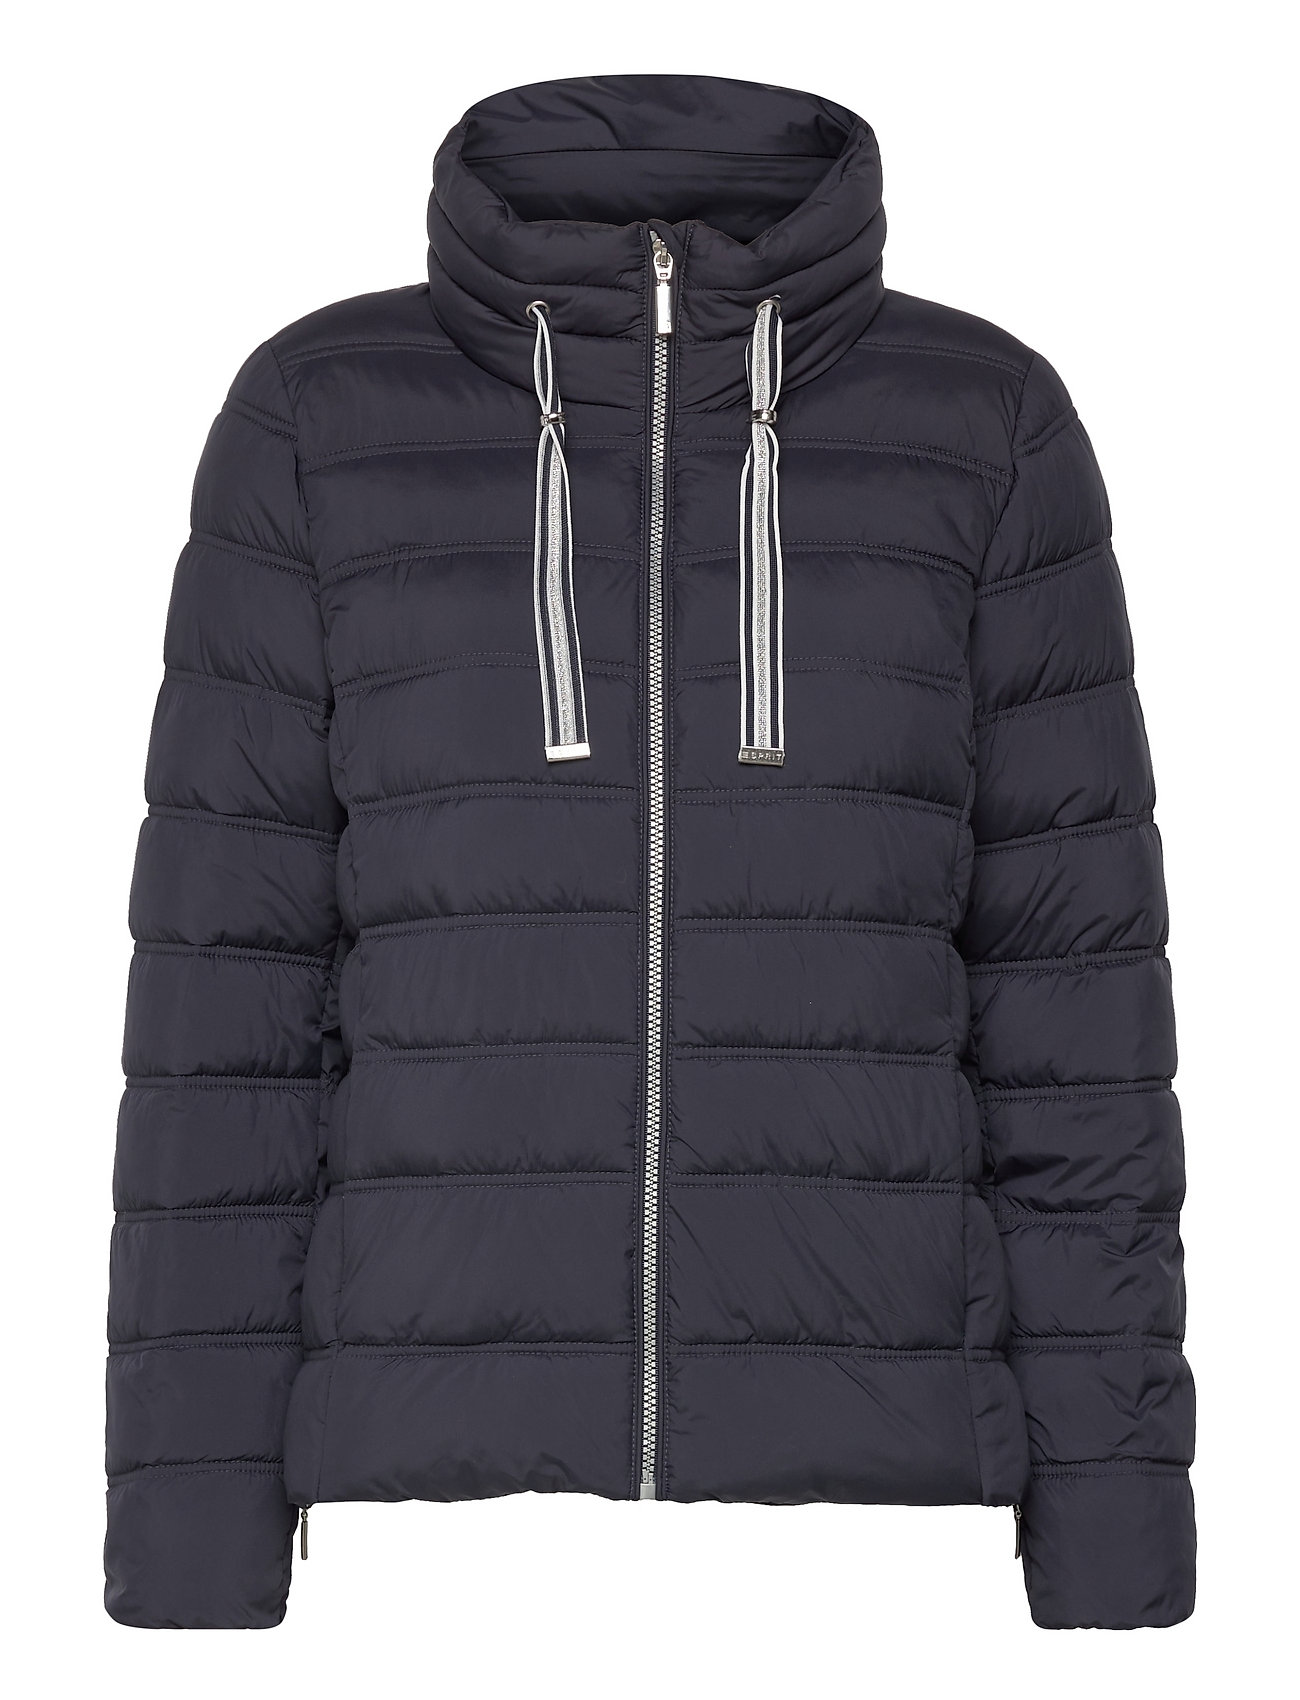 Esprit Collection Jackets Outdoor Woven Regular - 300 kr. Køb Forede jakker fra Esprit Collection online på Boozt.com. & nem retur